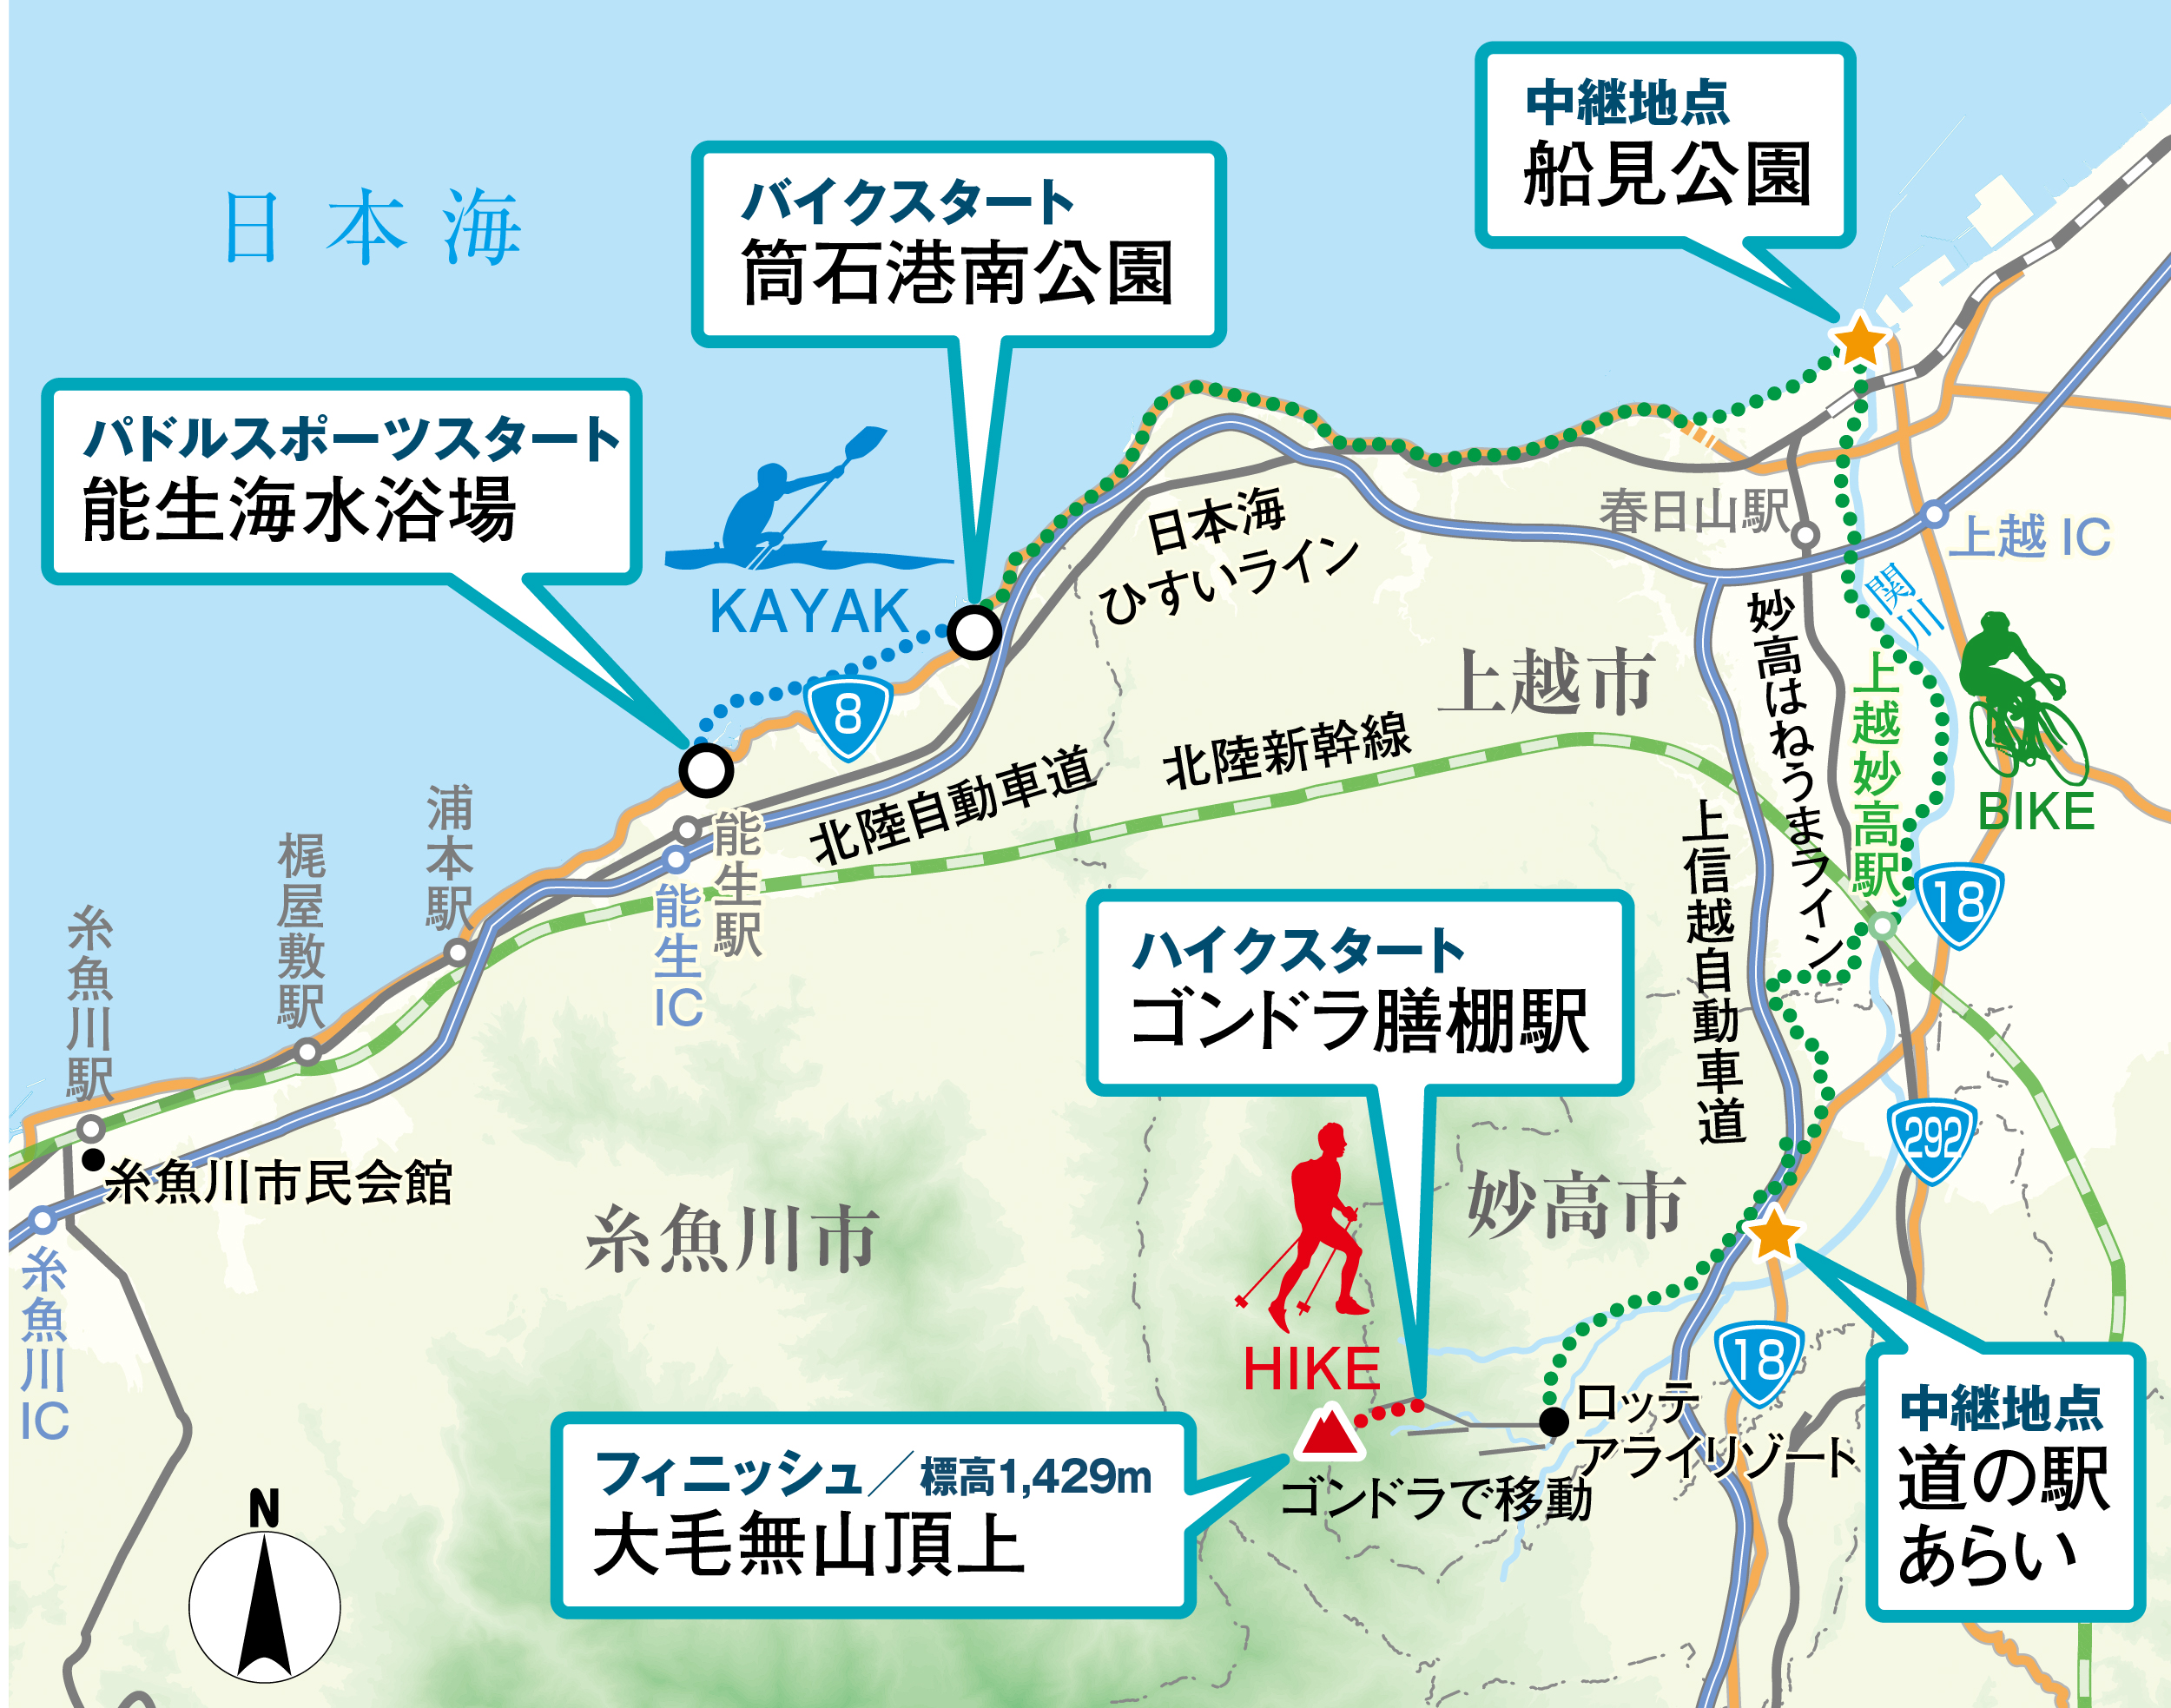 糸魚川・上越・妙高大会のコースマップ